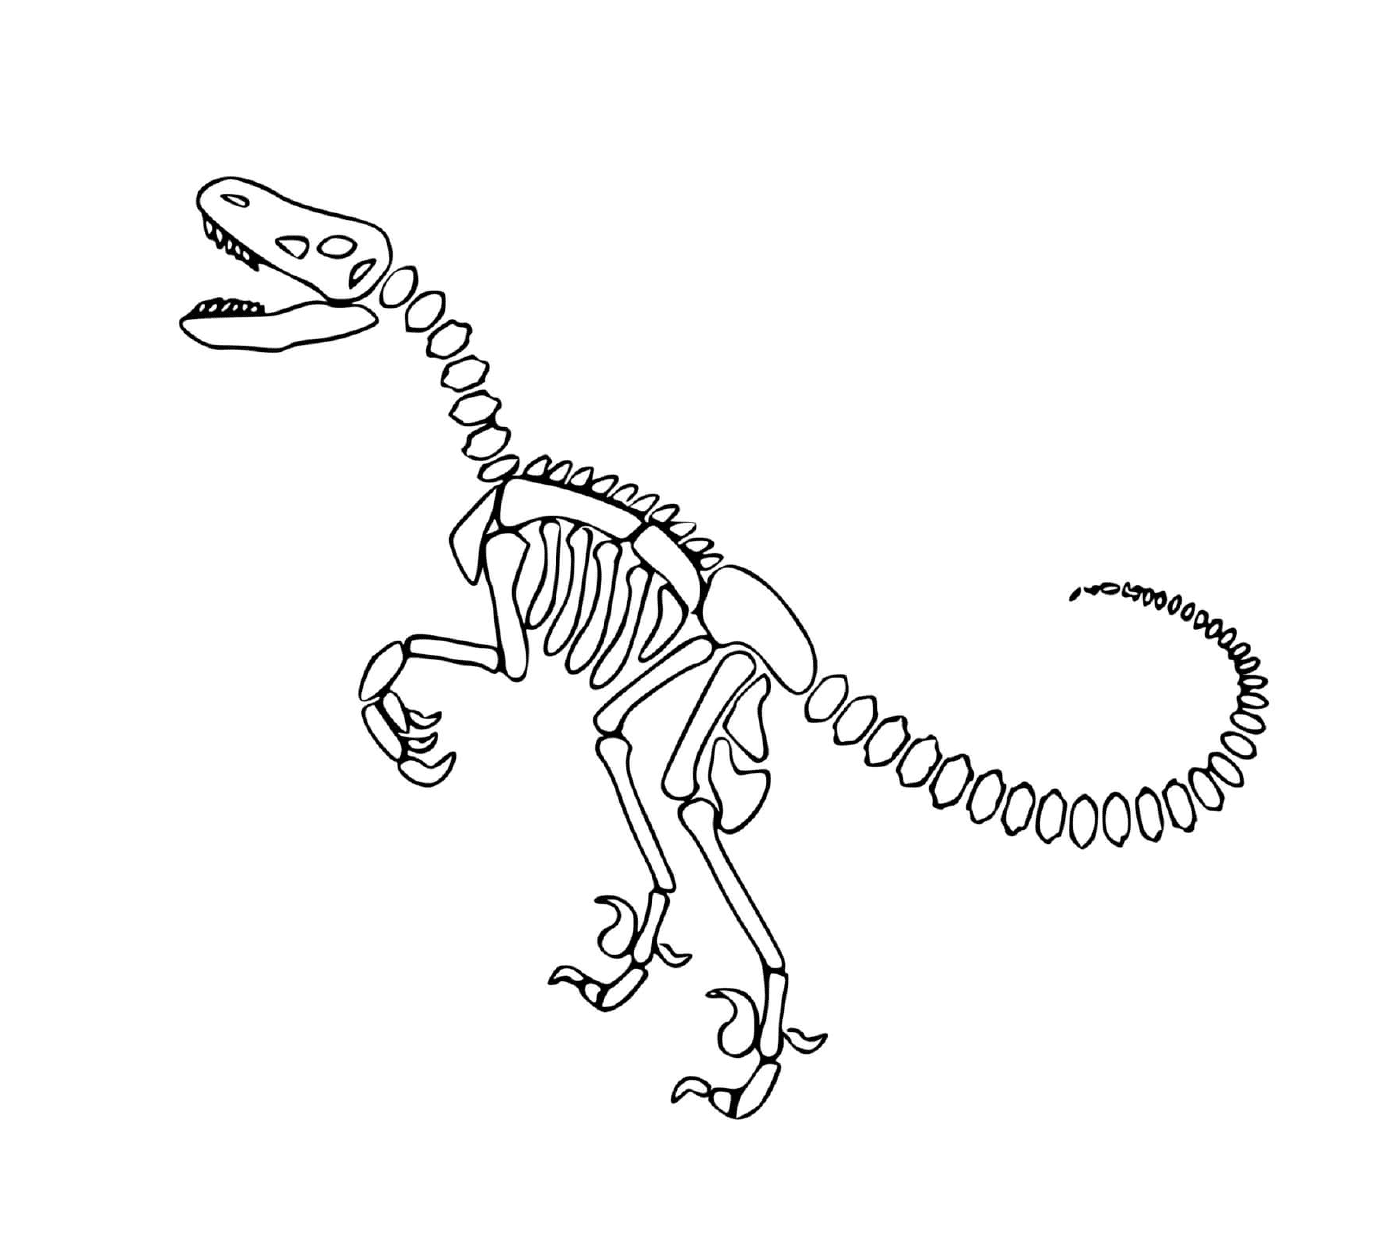  Dinosaurio, esqueleto, con hueso espiral 